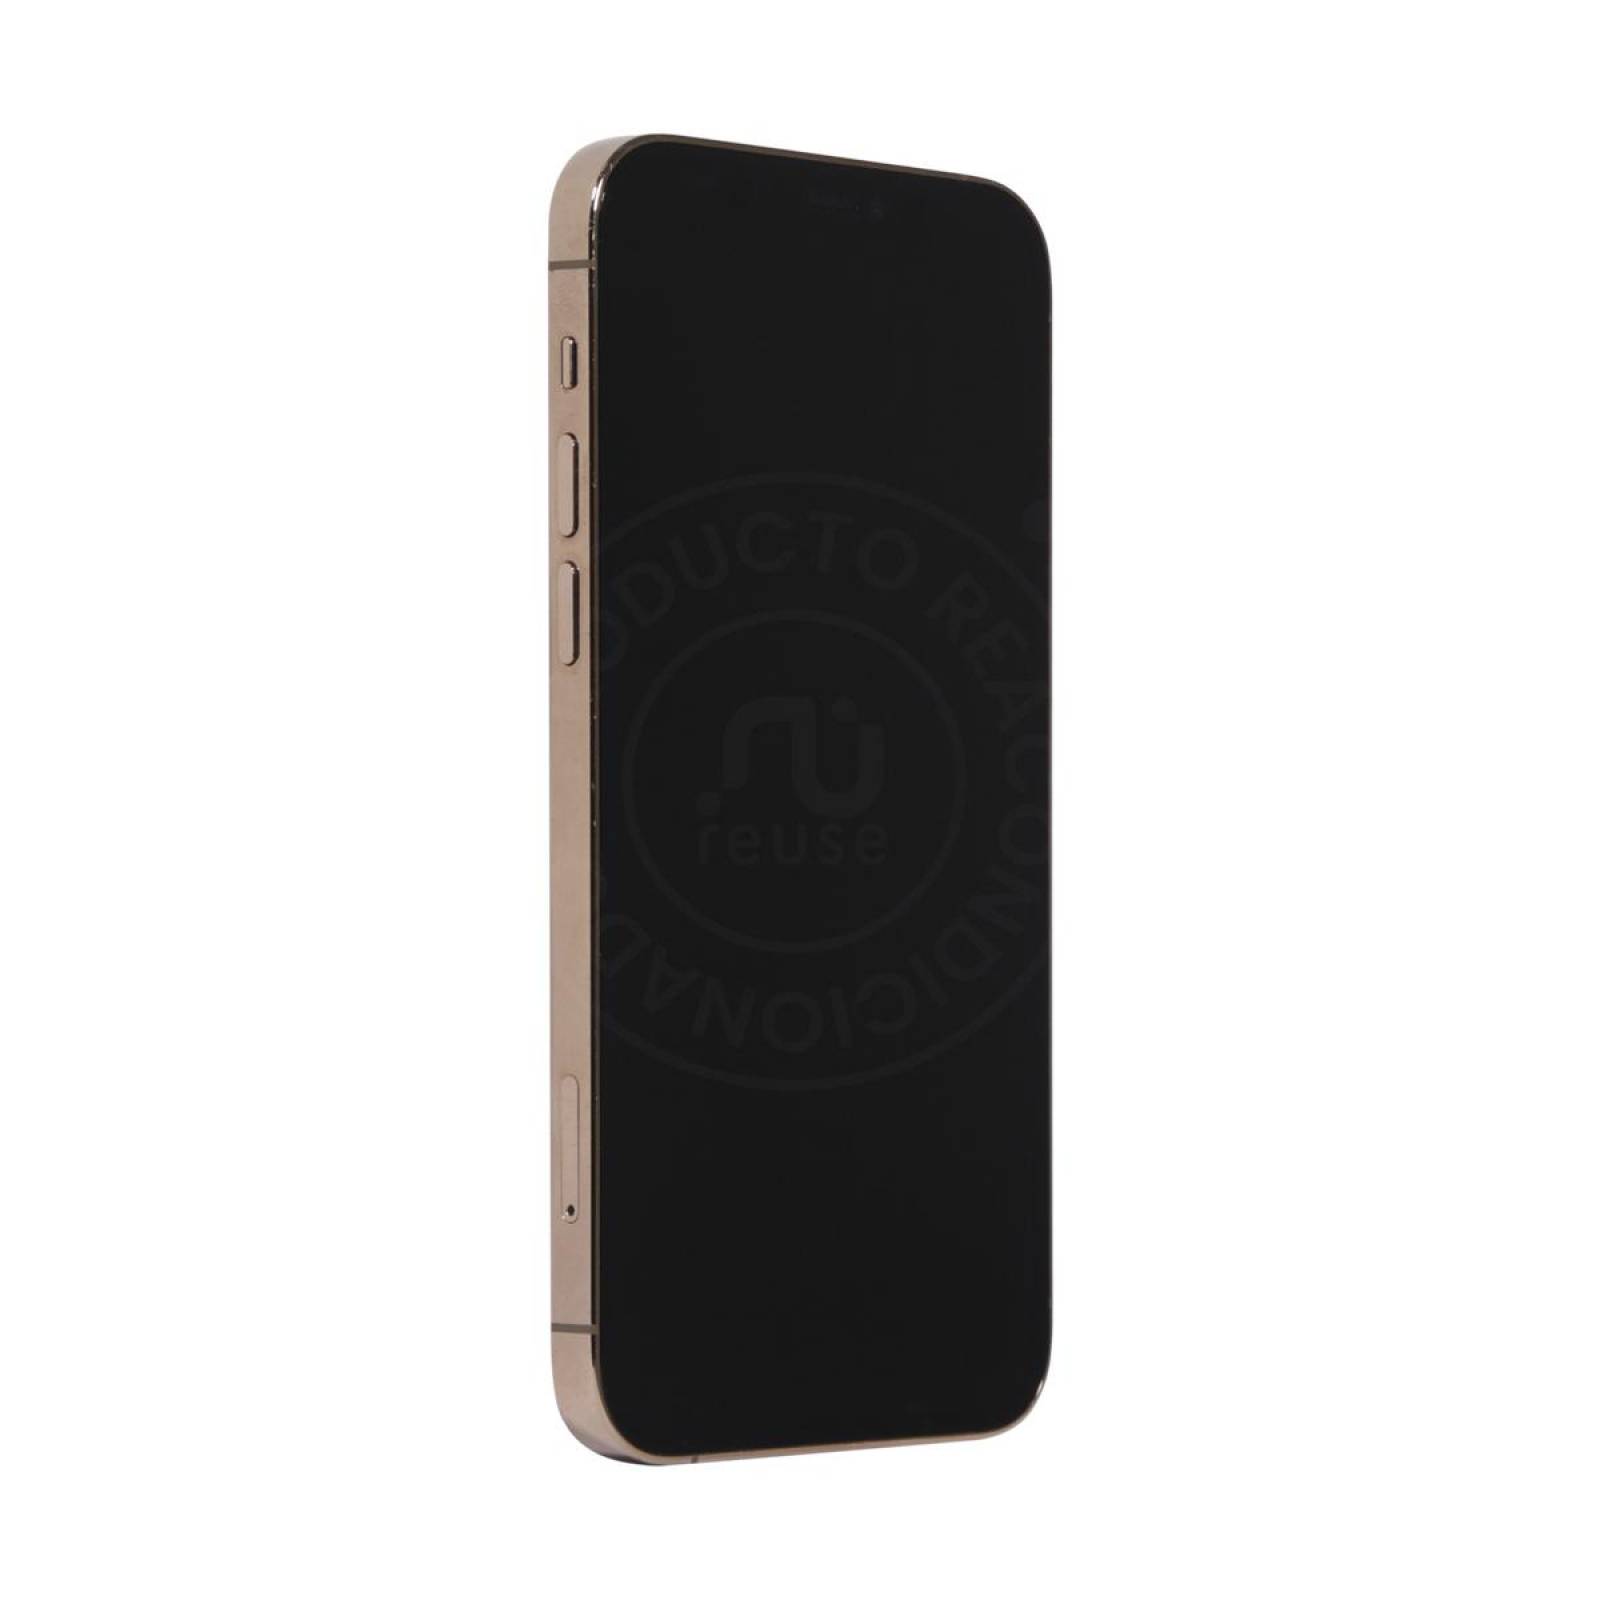 Apple Iphone 11 Pro 64GB Oro Reacondicionado Grado A 